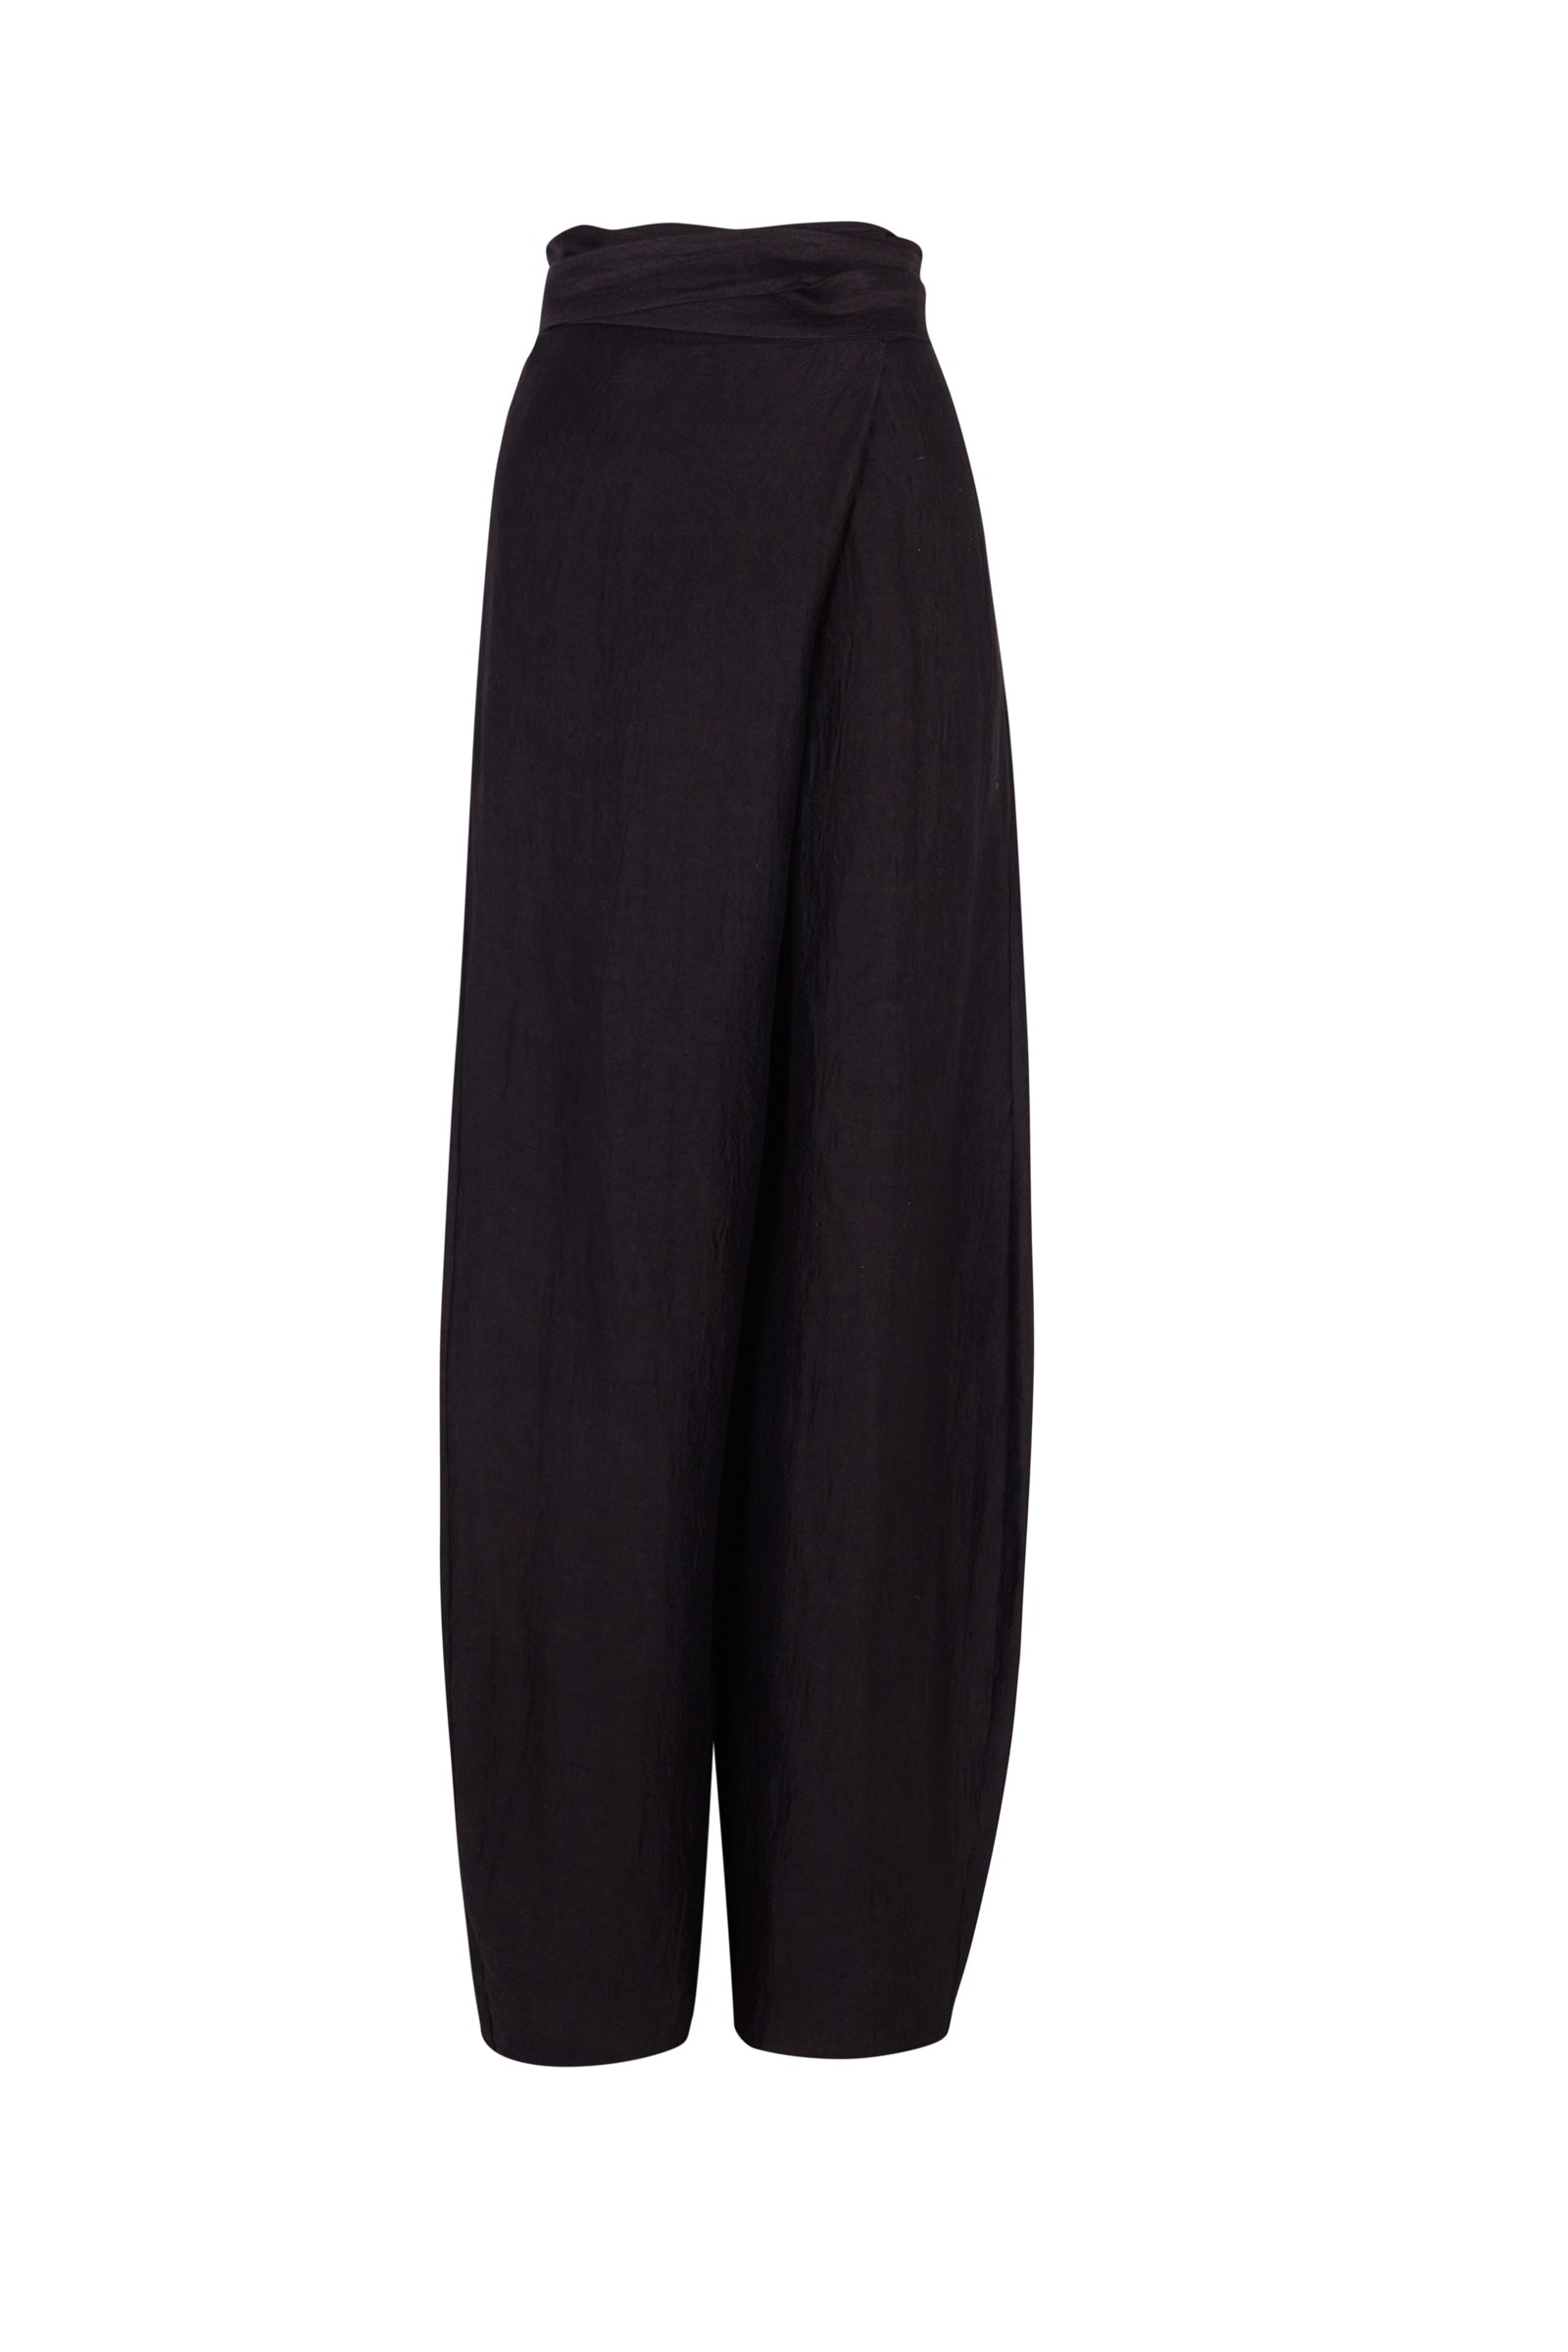 Cortana - Bachata, black linen and silk pants